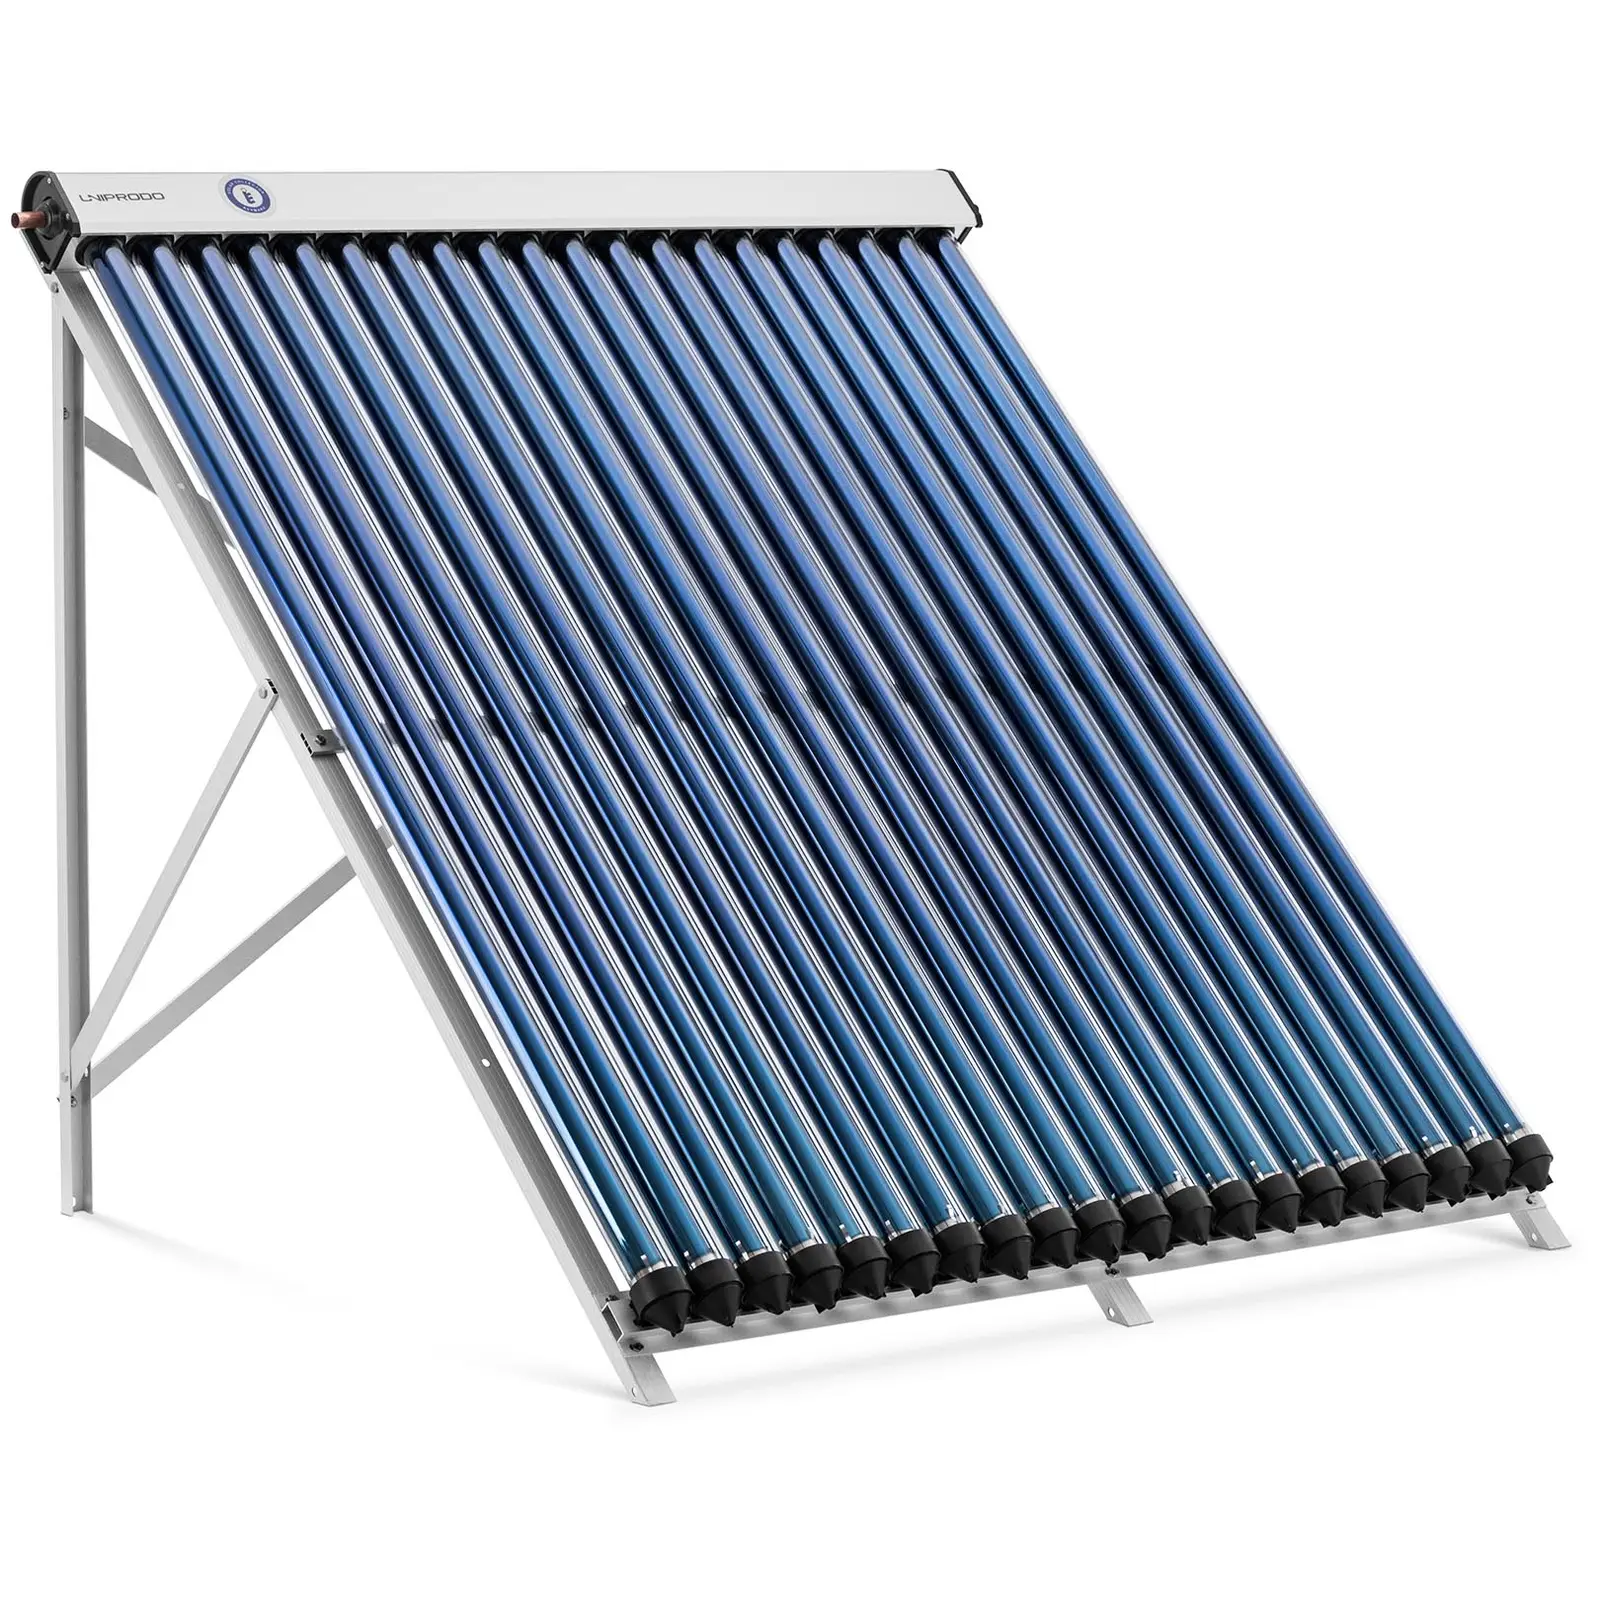 Vákuumcsöves napkollektor - napenergiával történő hőtermelés - 20 cső - 160–200 l - 1.6 m² - -45–90 °C